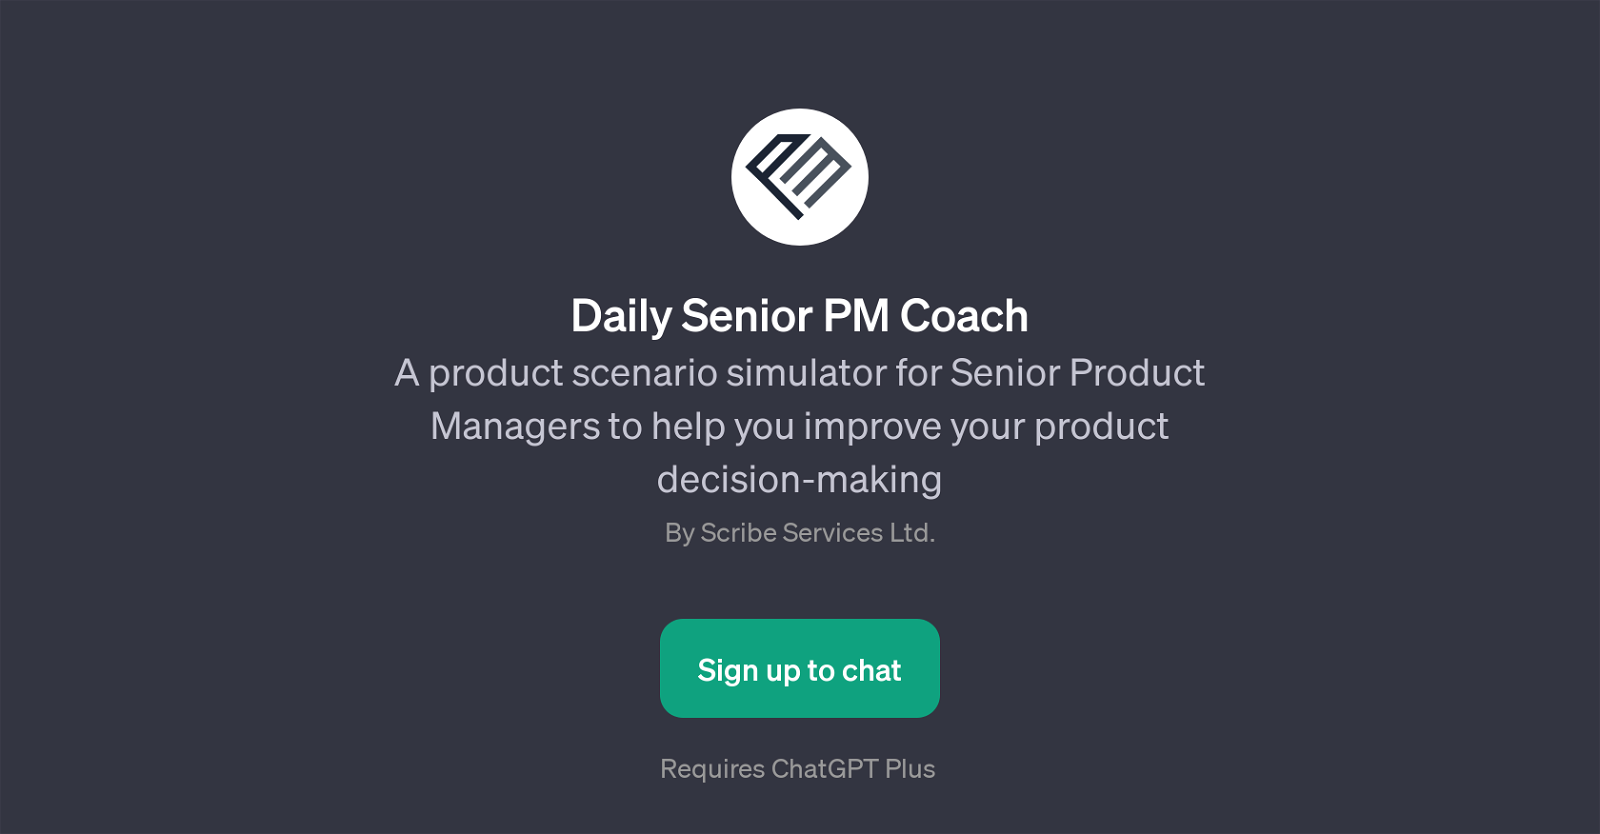 Daily Senior PM Coach website